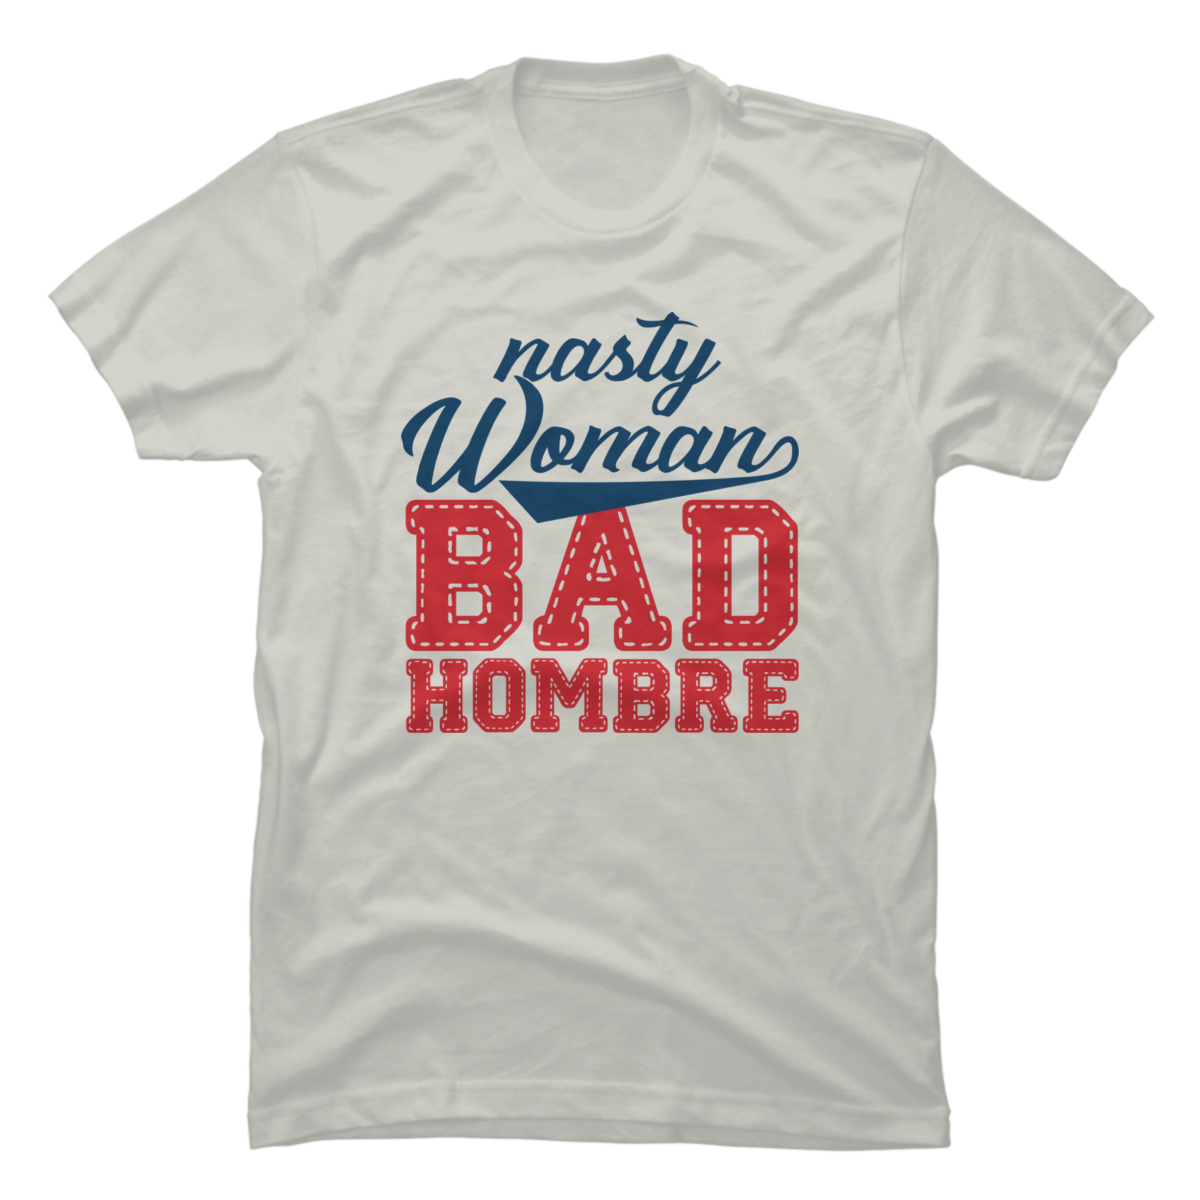 bad hombre t shirt